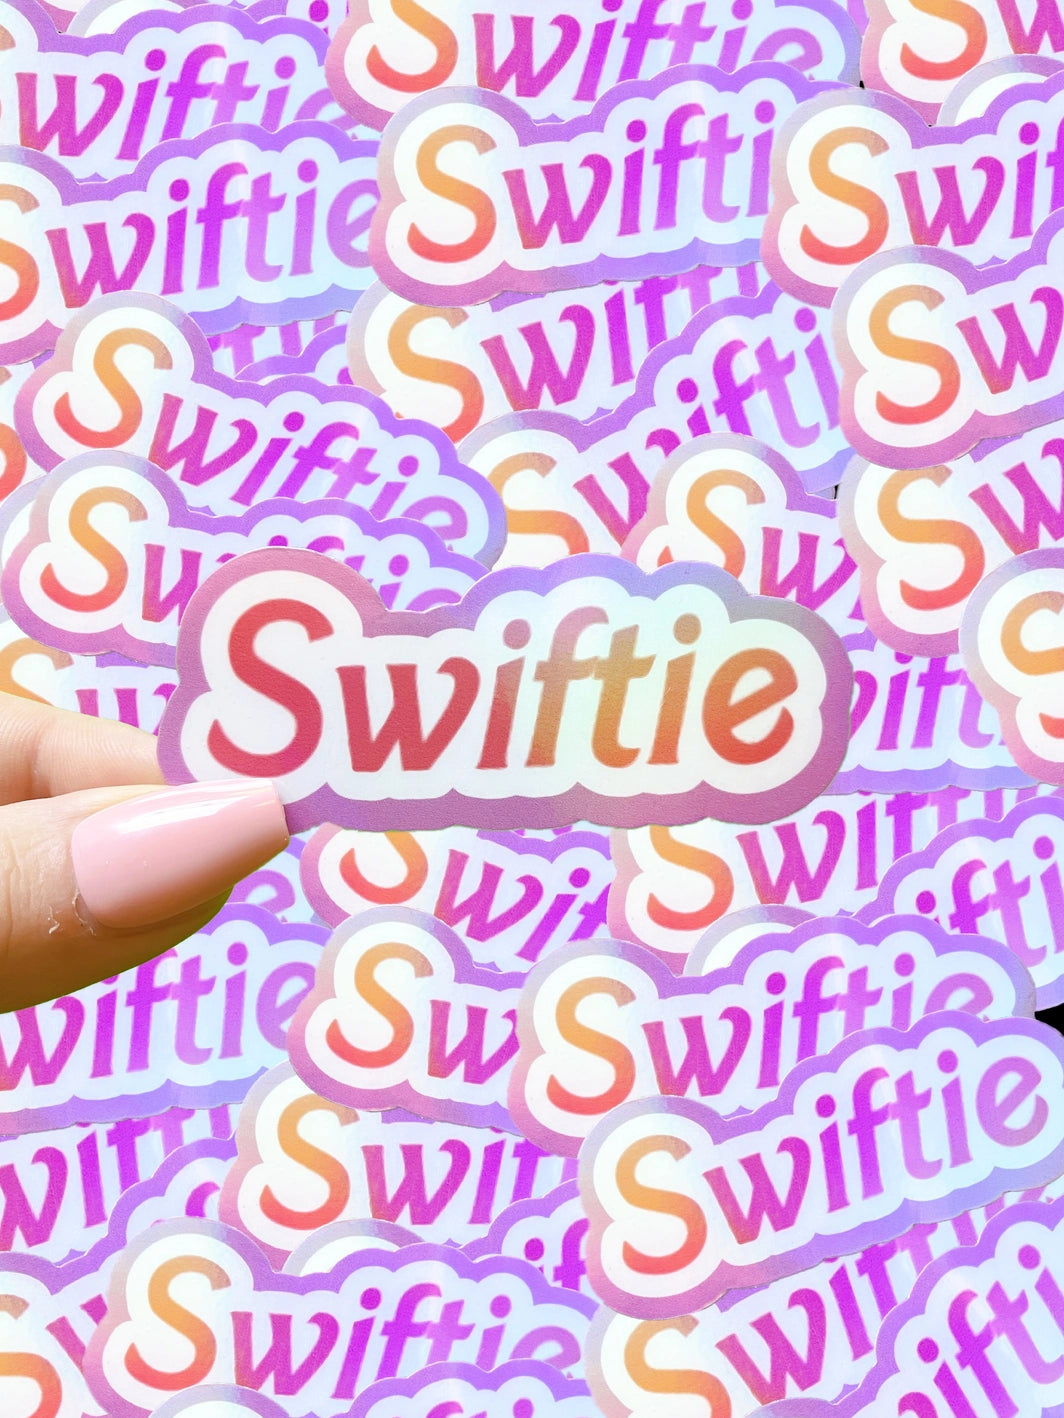 Swiftie | Taylor Swift Inspired Holographic Waterproof Sticker| Swiftie